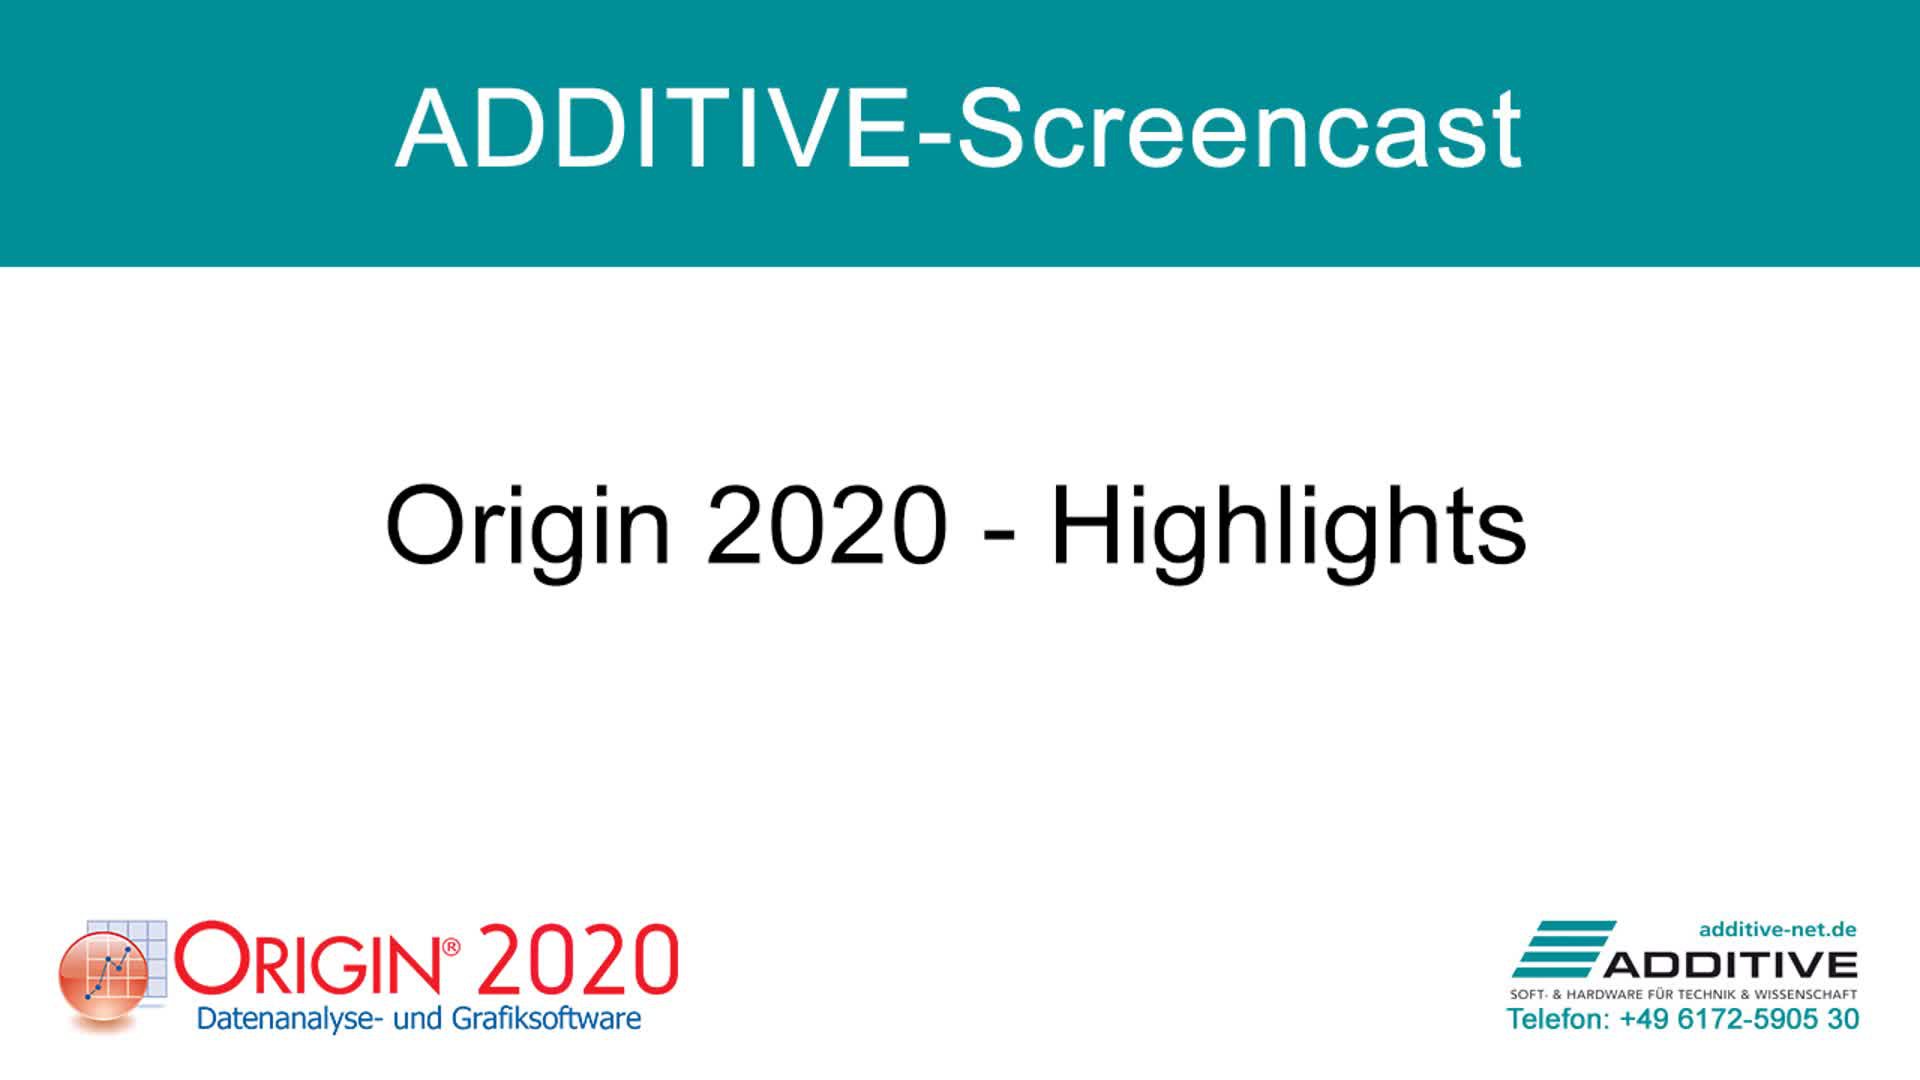 Highlights in Origin 2020